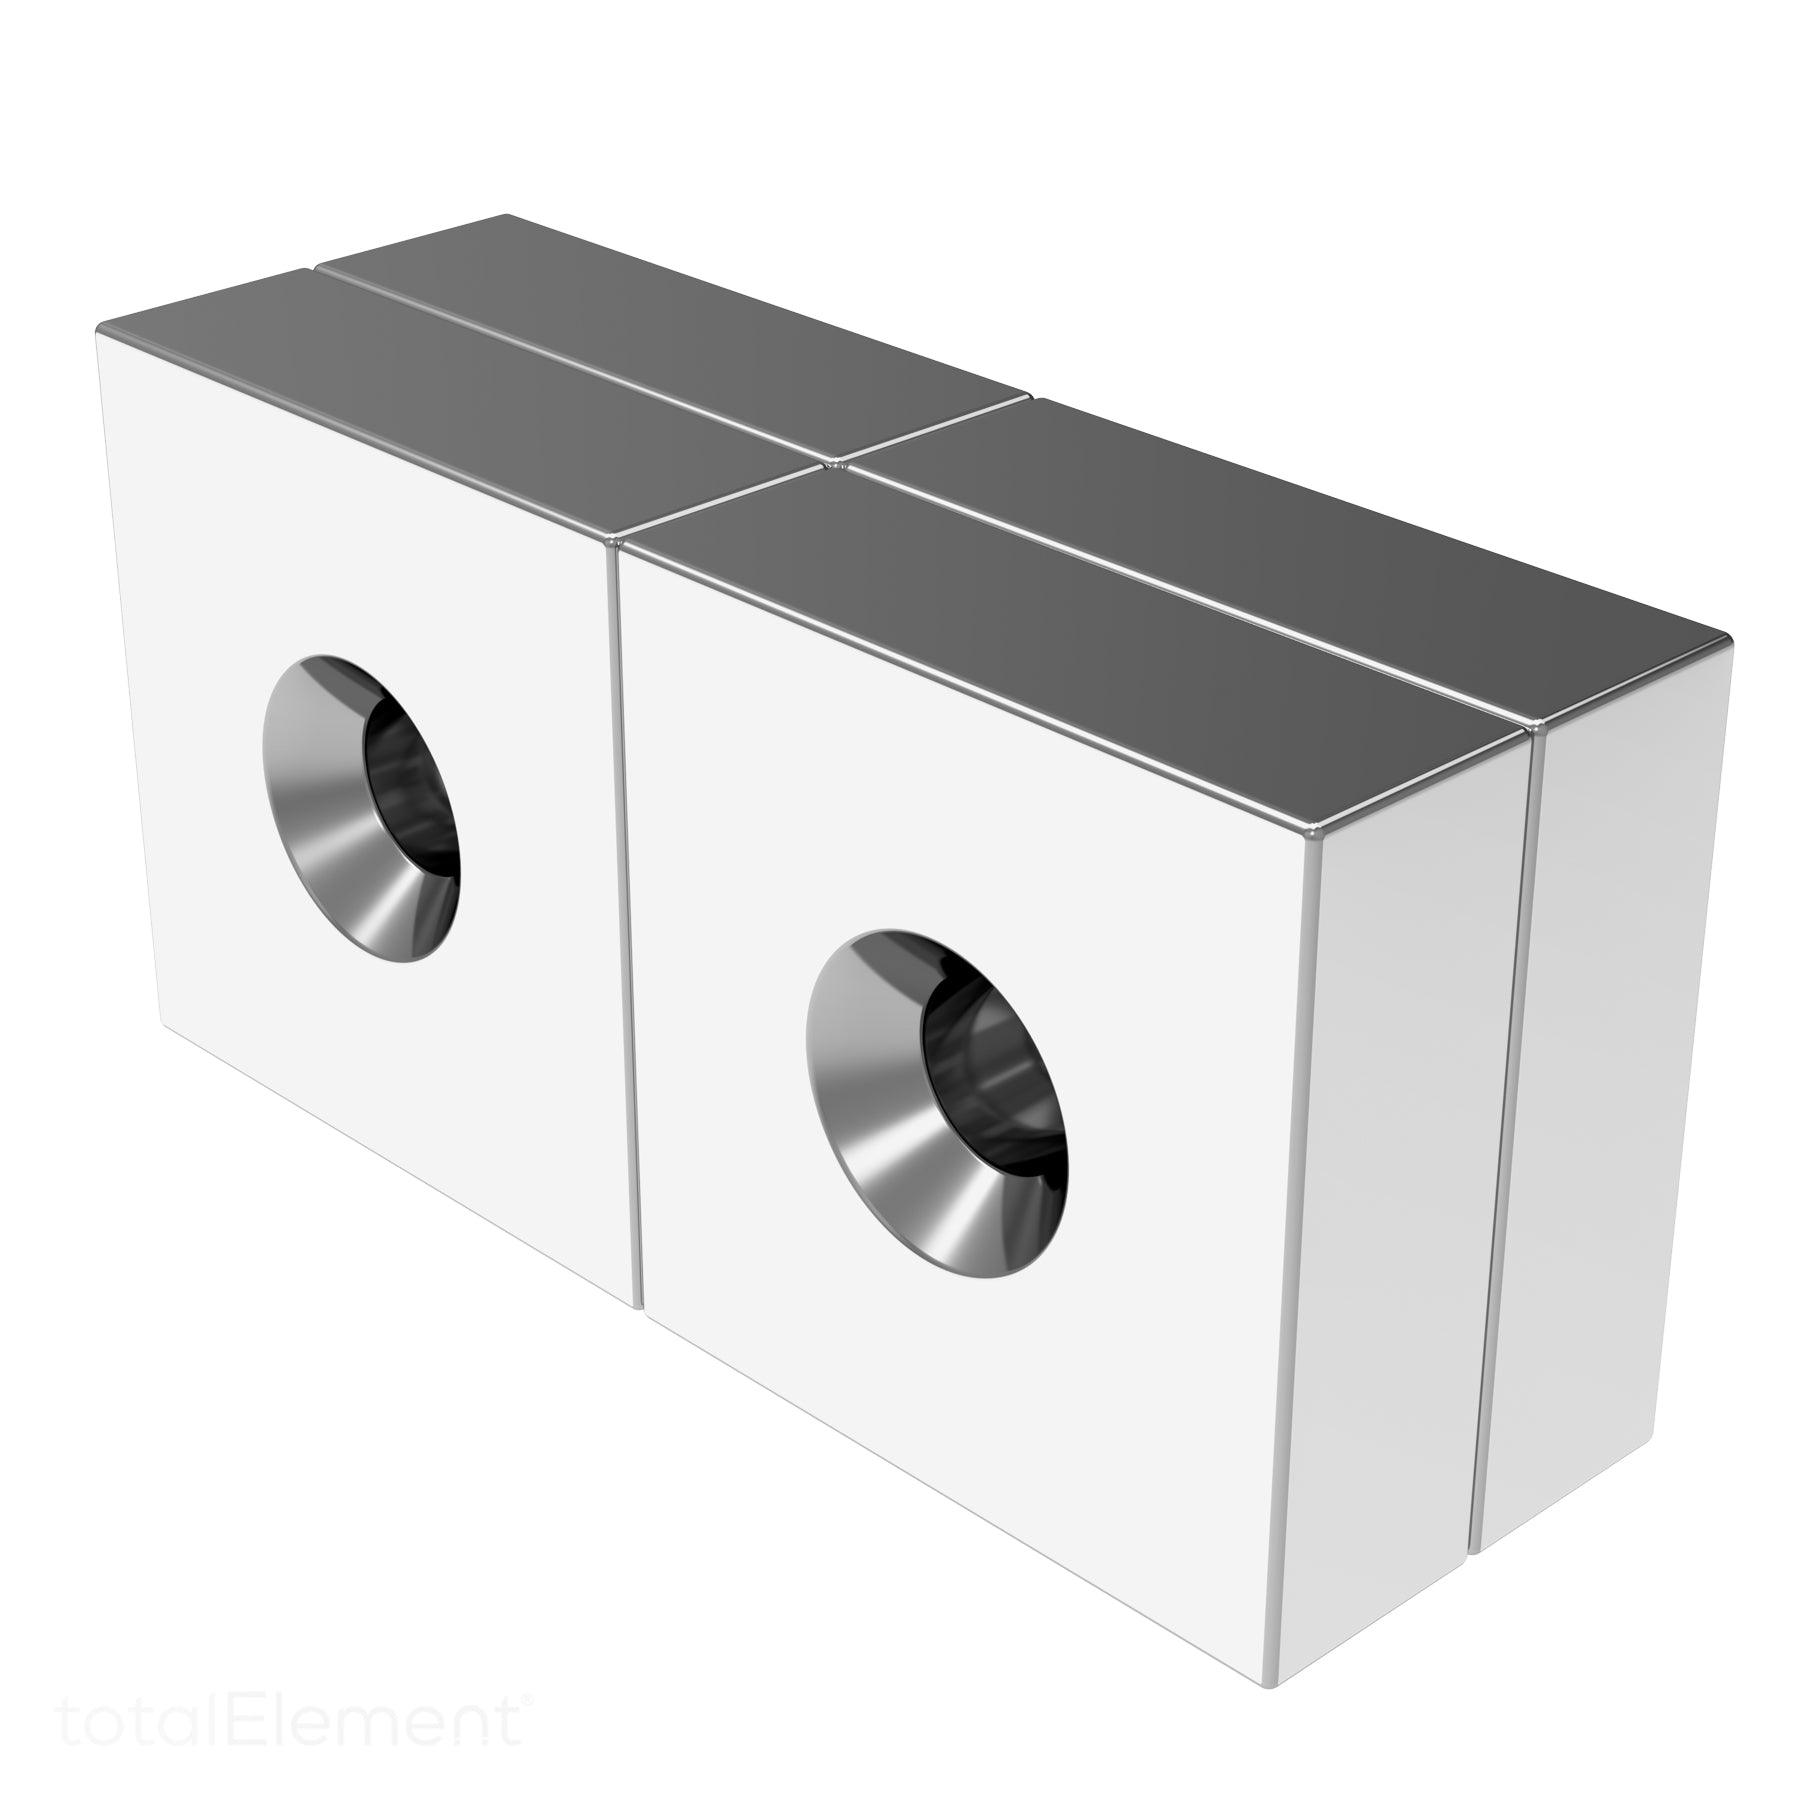 Neodymium Block Magnets to 1 Inch 1st Class Customer Help